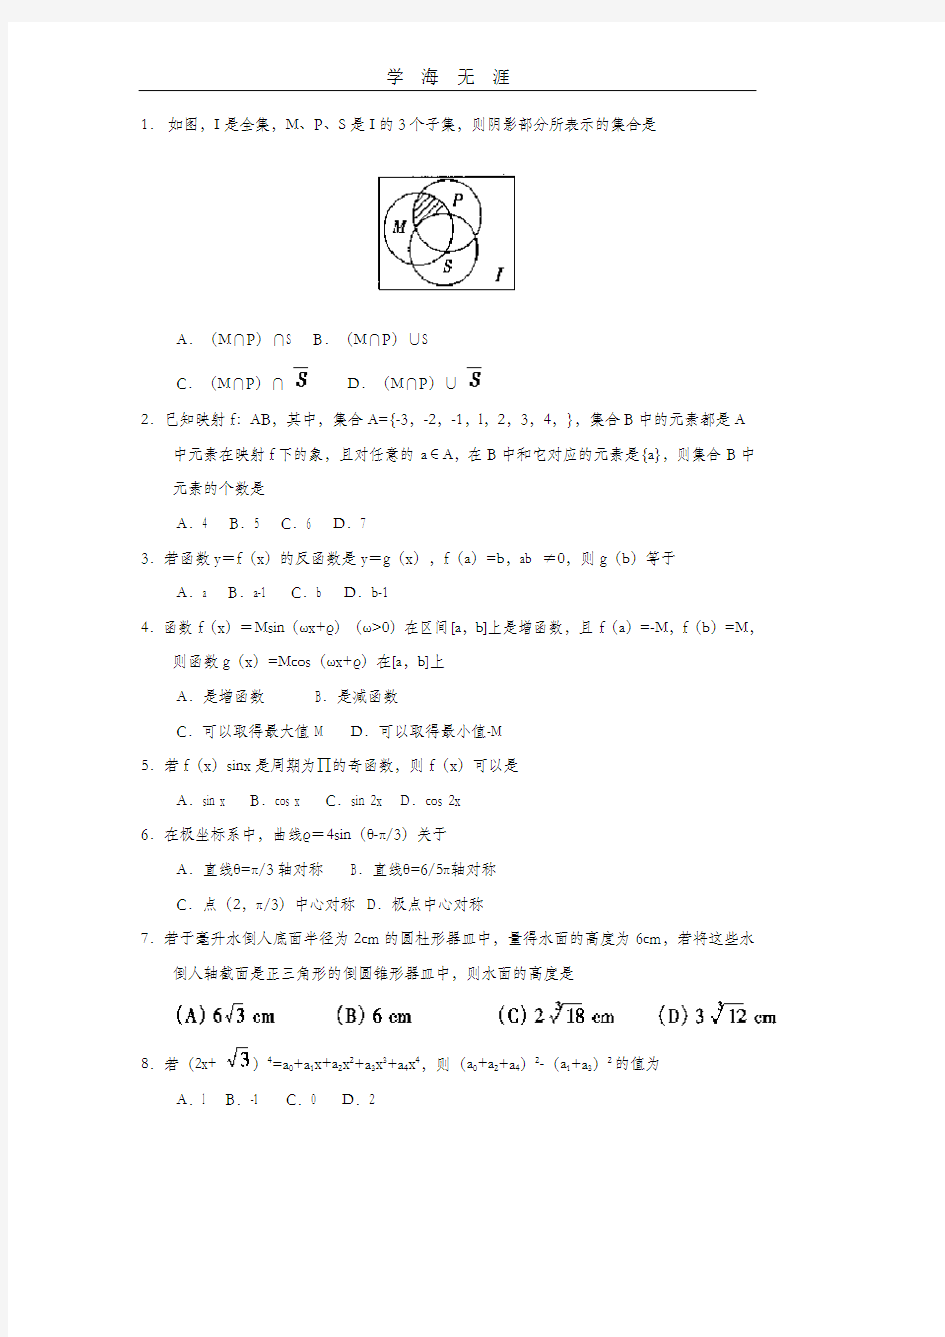 1999年全国高考-数学(理).pdf